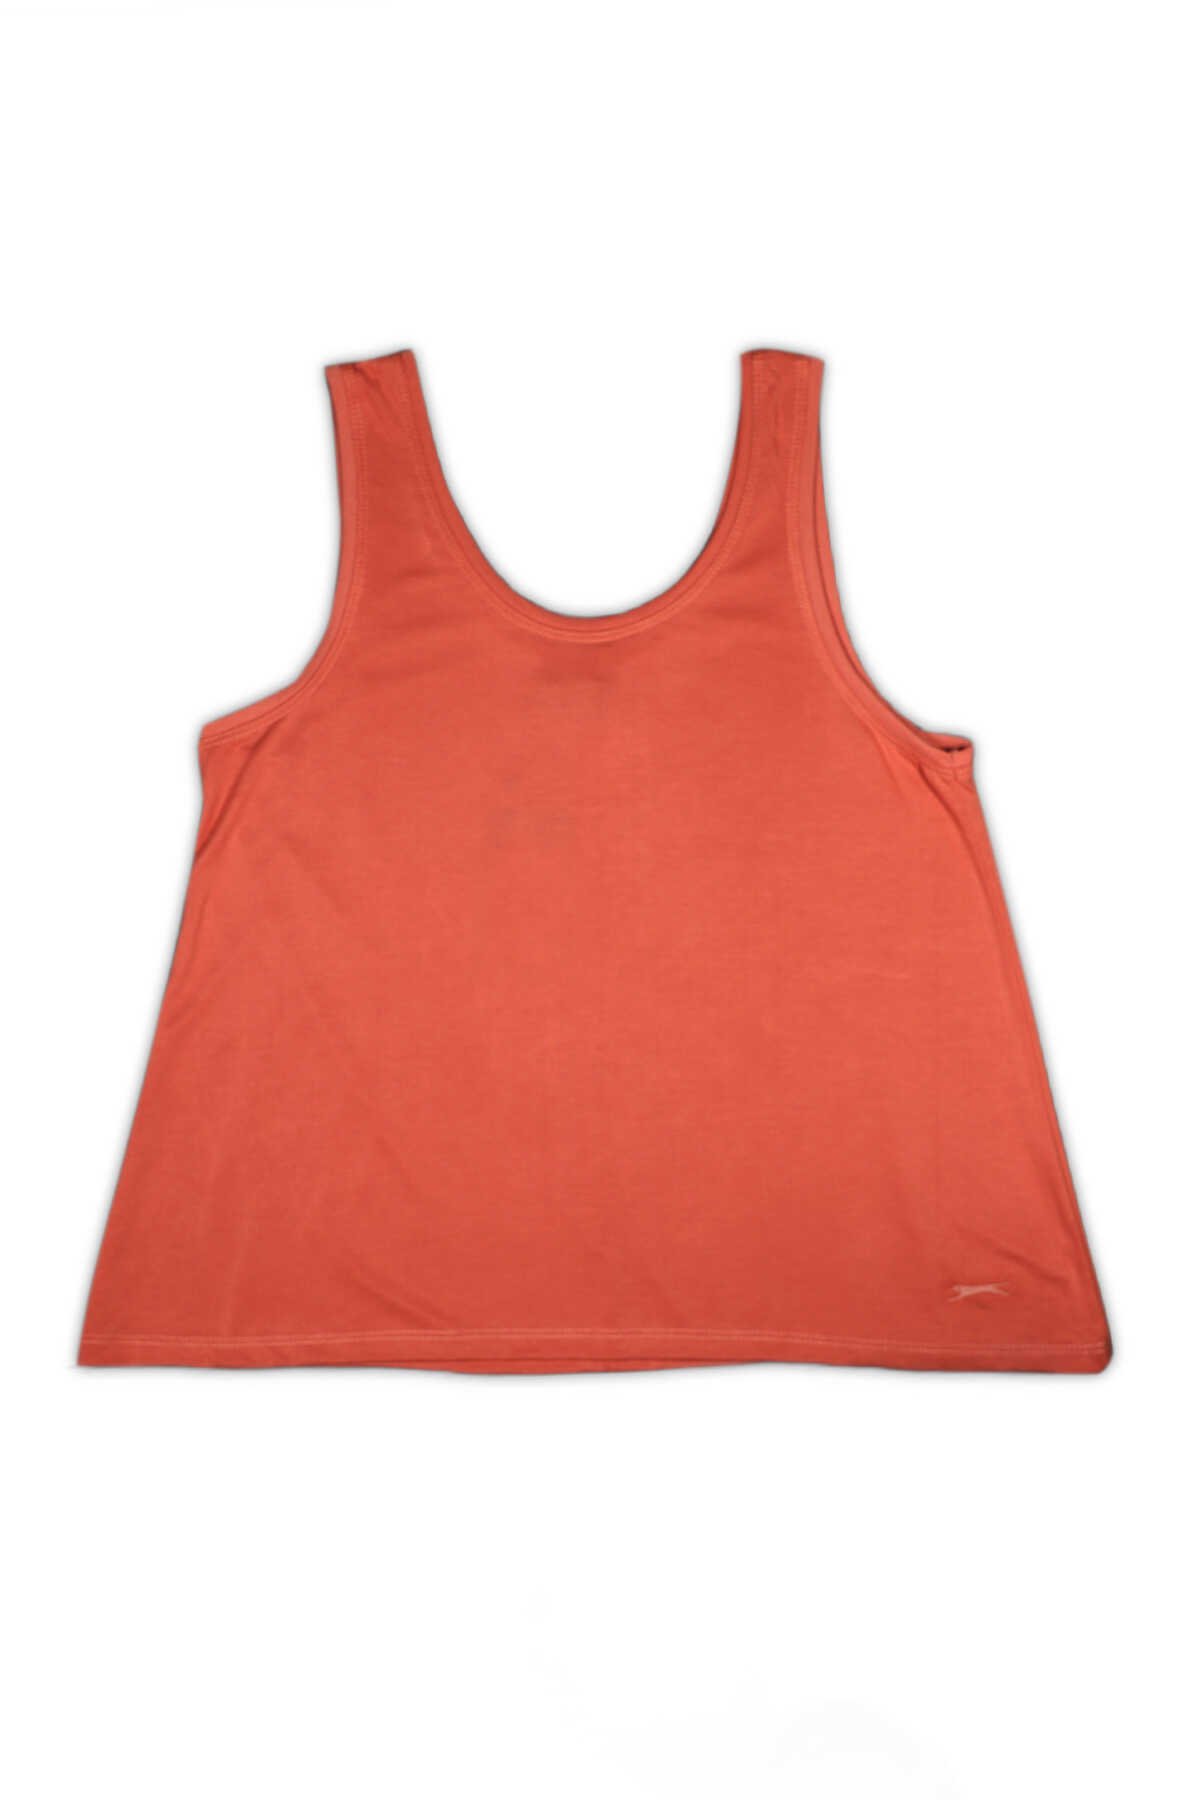 Slazenger - Slazenger PIUS Kadın Fitness T-Shirt Somon